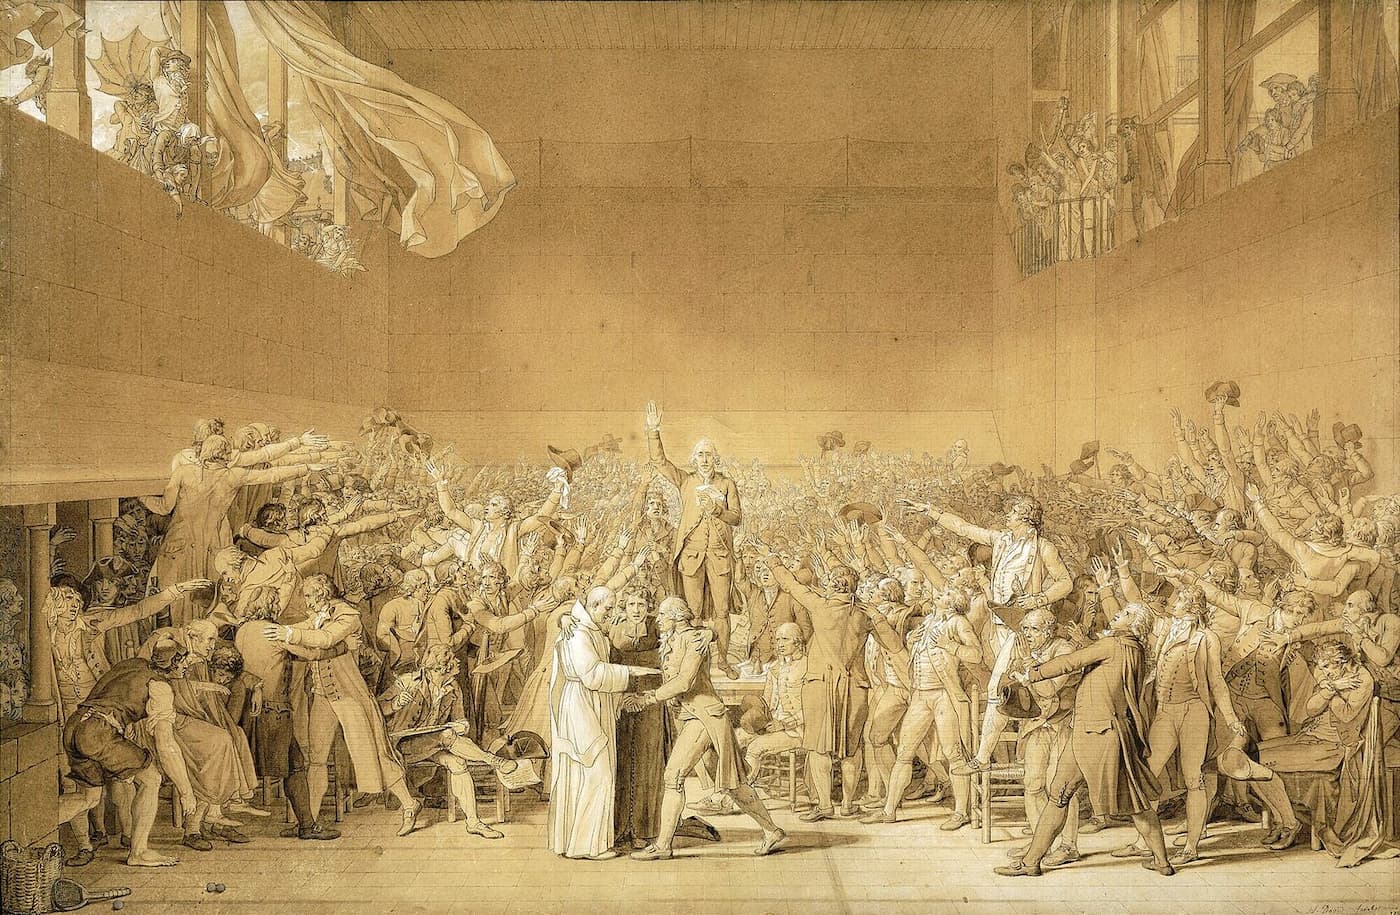 Tenis Kortu Yemini'nden Jacques-Louis David'in çizimi. David daha sonra 1793'te Ulusal Konvansiyon'da milletvekili oldu.